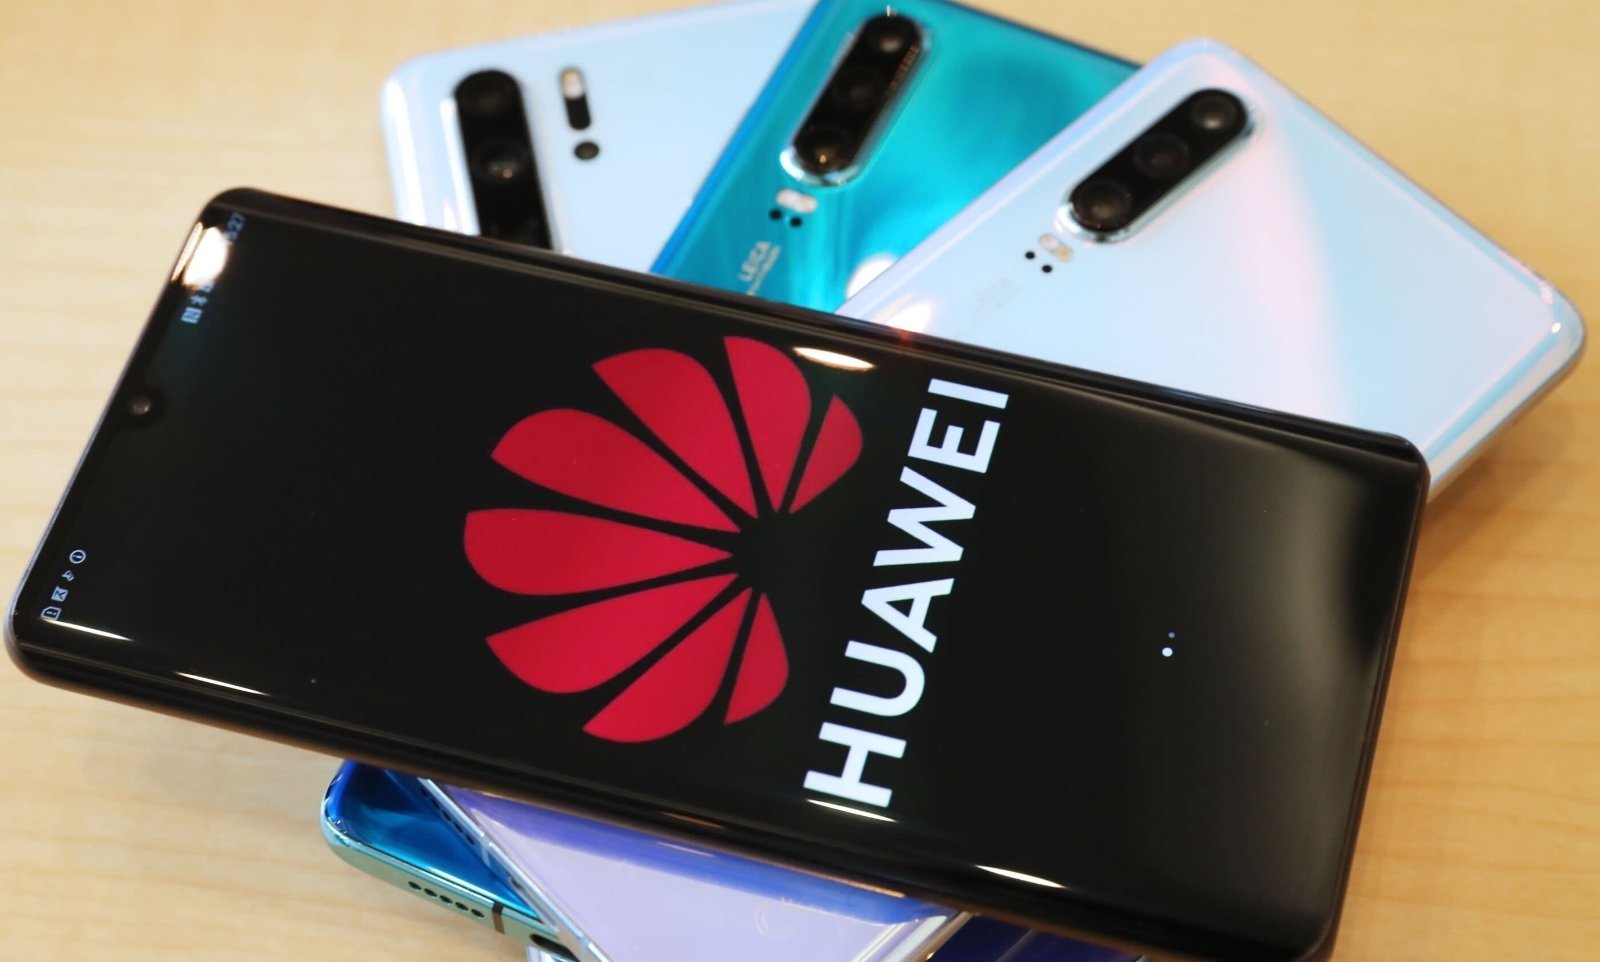 Huawei espera vender este año la mitad de terminales que el año pasado